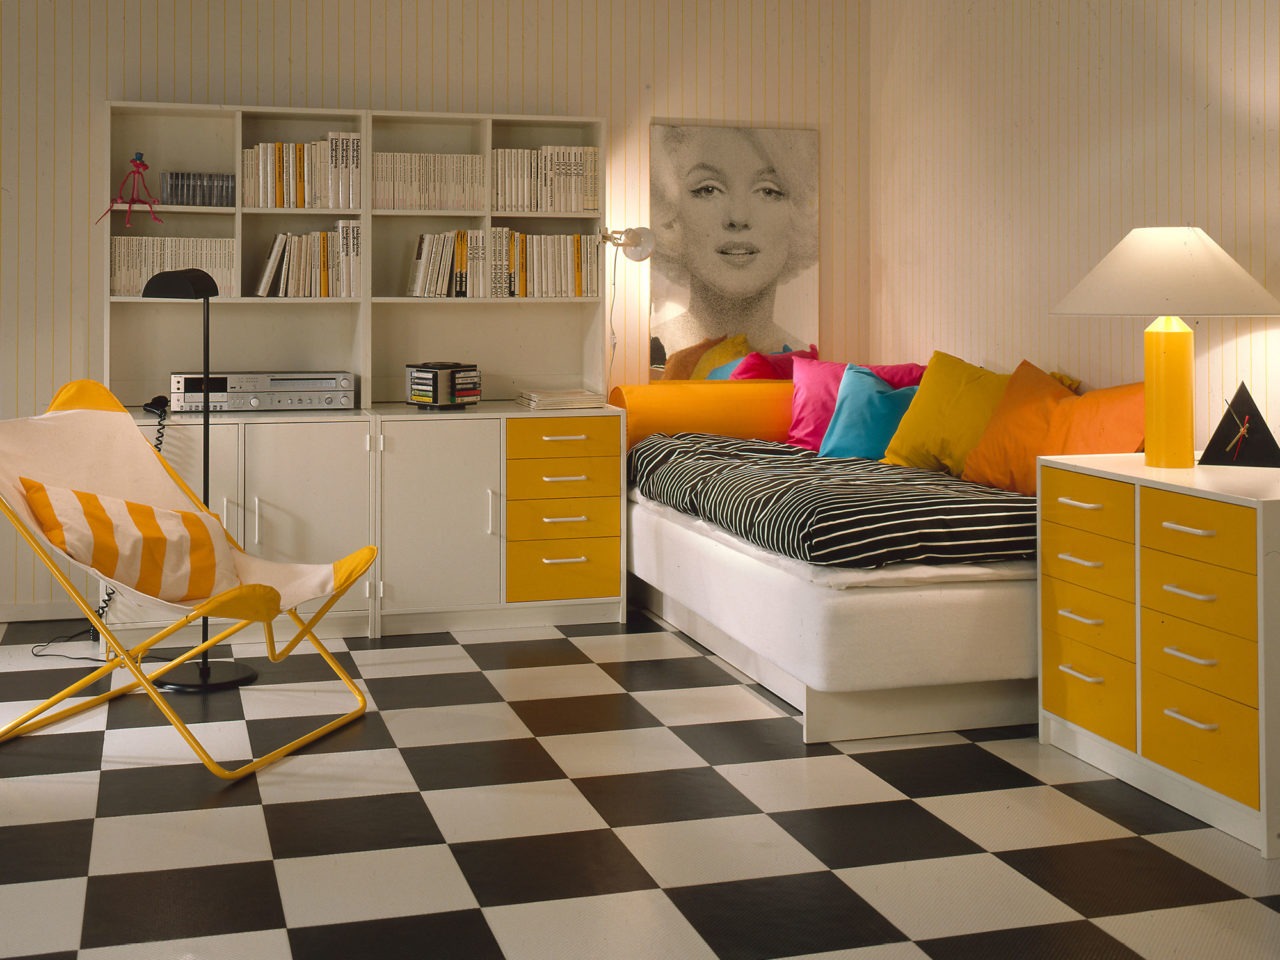 Pièce claire avec sol à damier, tapisserie à rayures jaunes et blanches, meubles de rangement BOJ blancs avec détails jaunes.